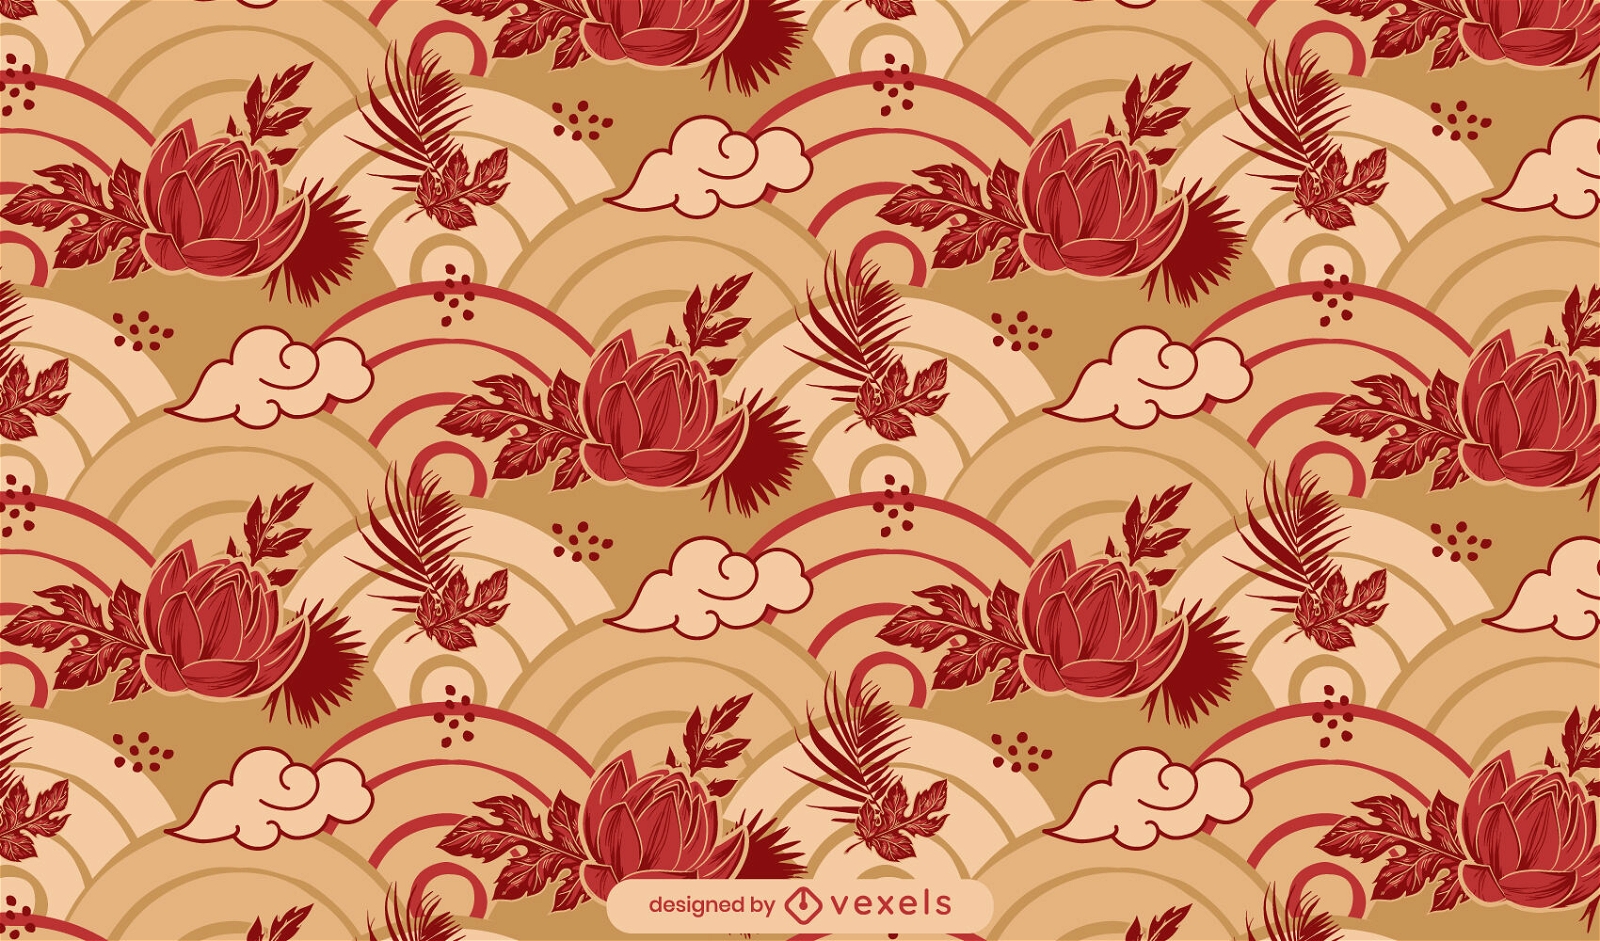 Japanese floral pattern design